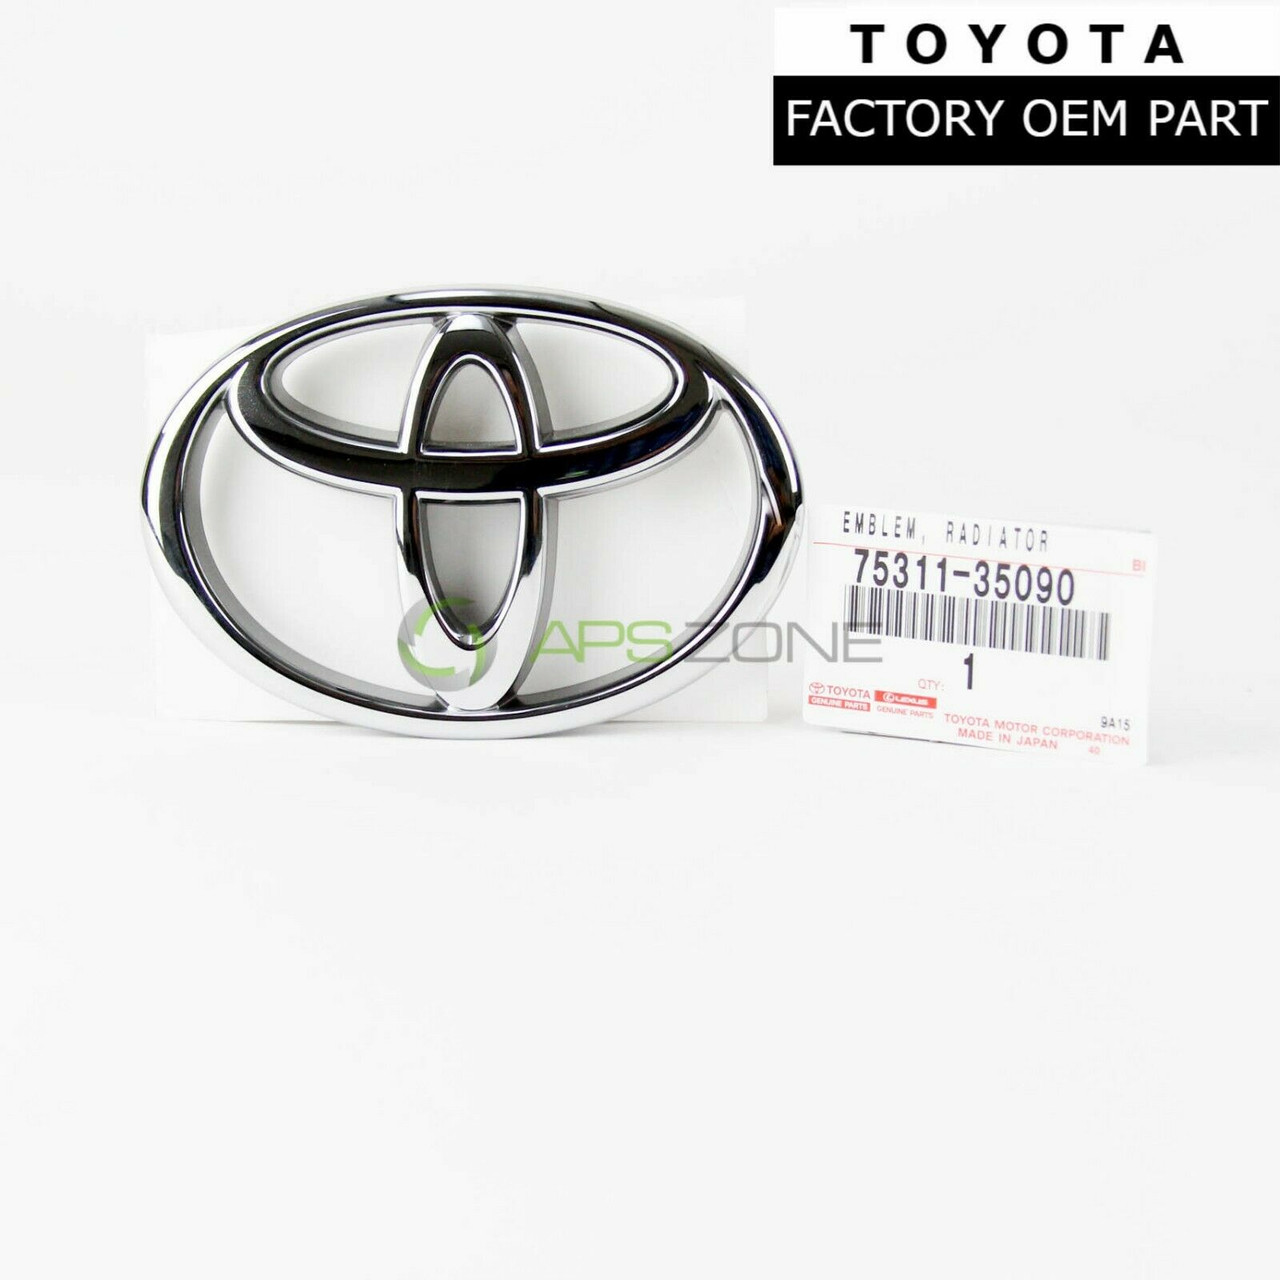 Toyota 4Runner Tacoma Pickup T100 Front Grille Emblem Genuine OEM 75311-35090 | 7531135090